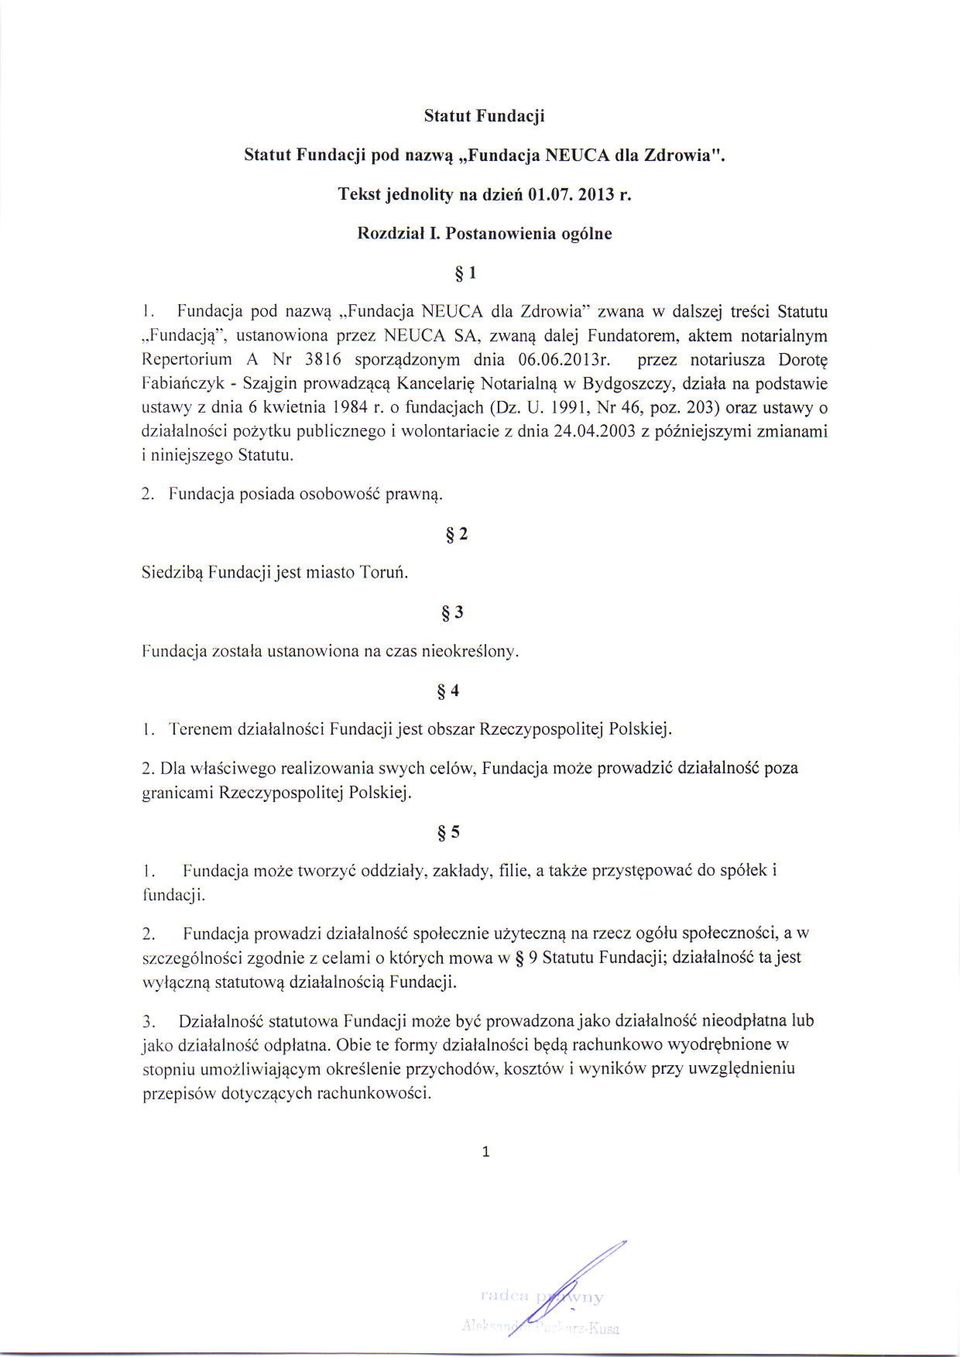 przez notariusza Dorot9 I:abiaficzyk - Szajgin prowadz4c4 Kancelari9 Notarialn4 w Bydgoszczy, dziala na podstawie ustawy z dnia 6 kwietnia 198,1 r. o fundacjach (Dz. U. t991, Nr 46, poz.